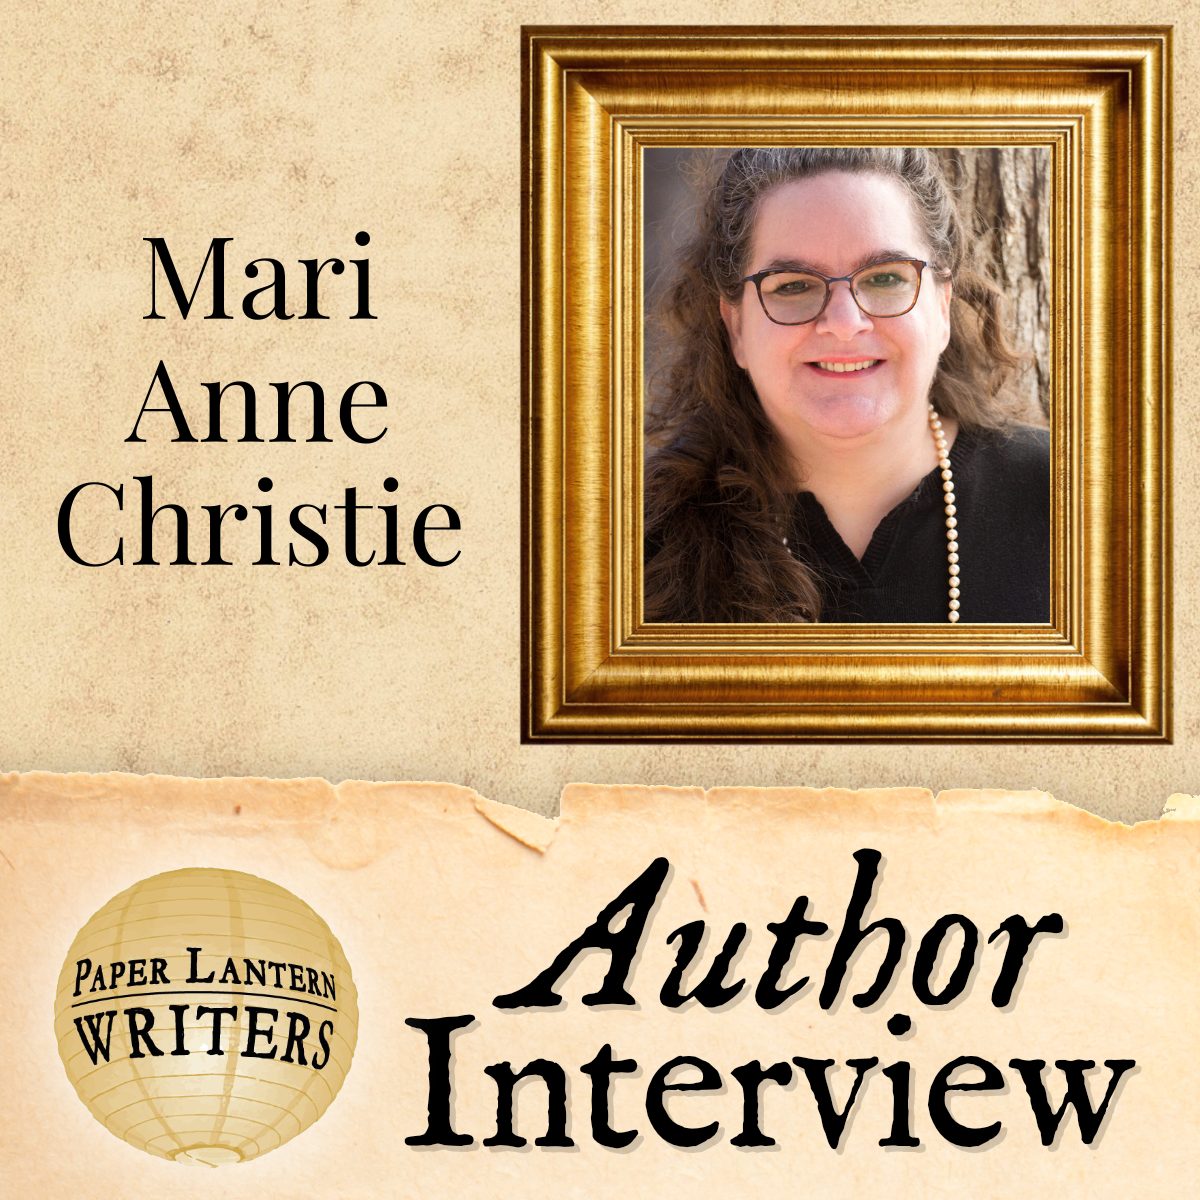 Interview with Paper Lantern Writer Mari Anne Christie